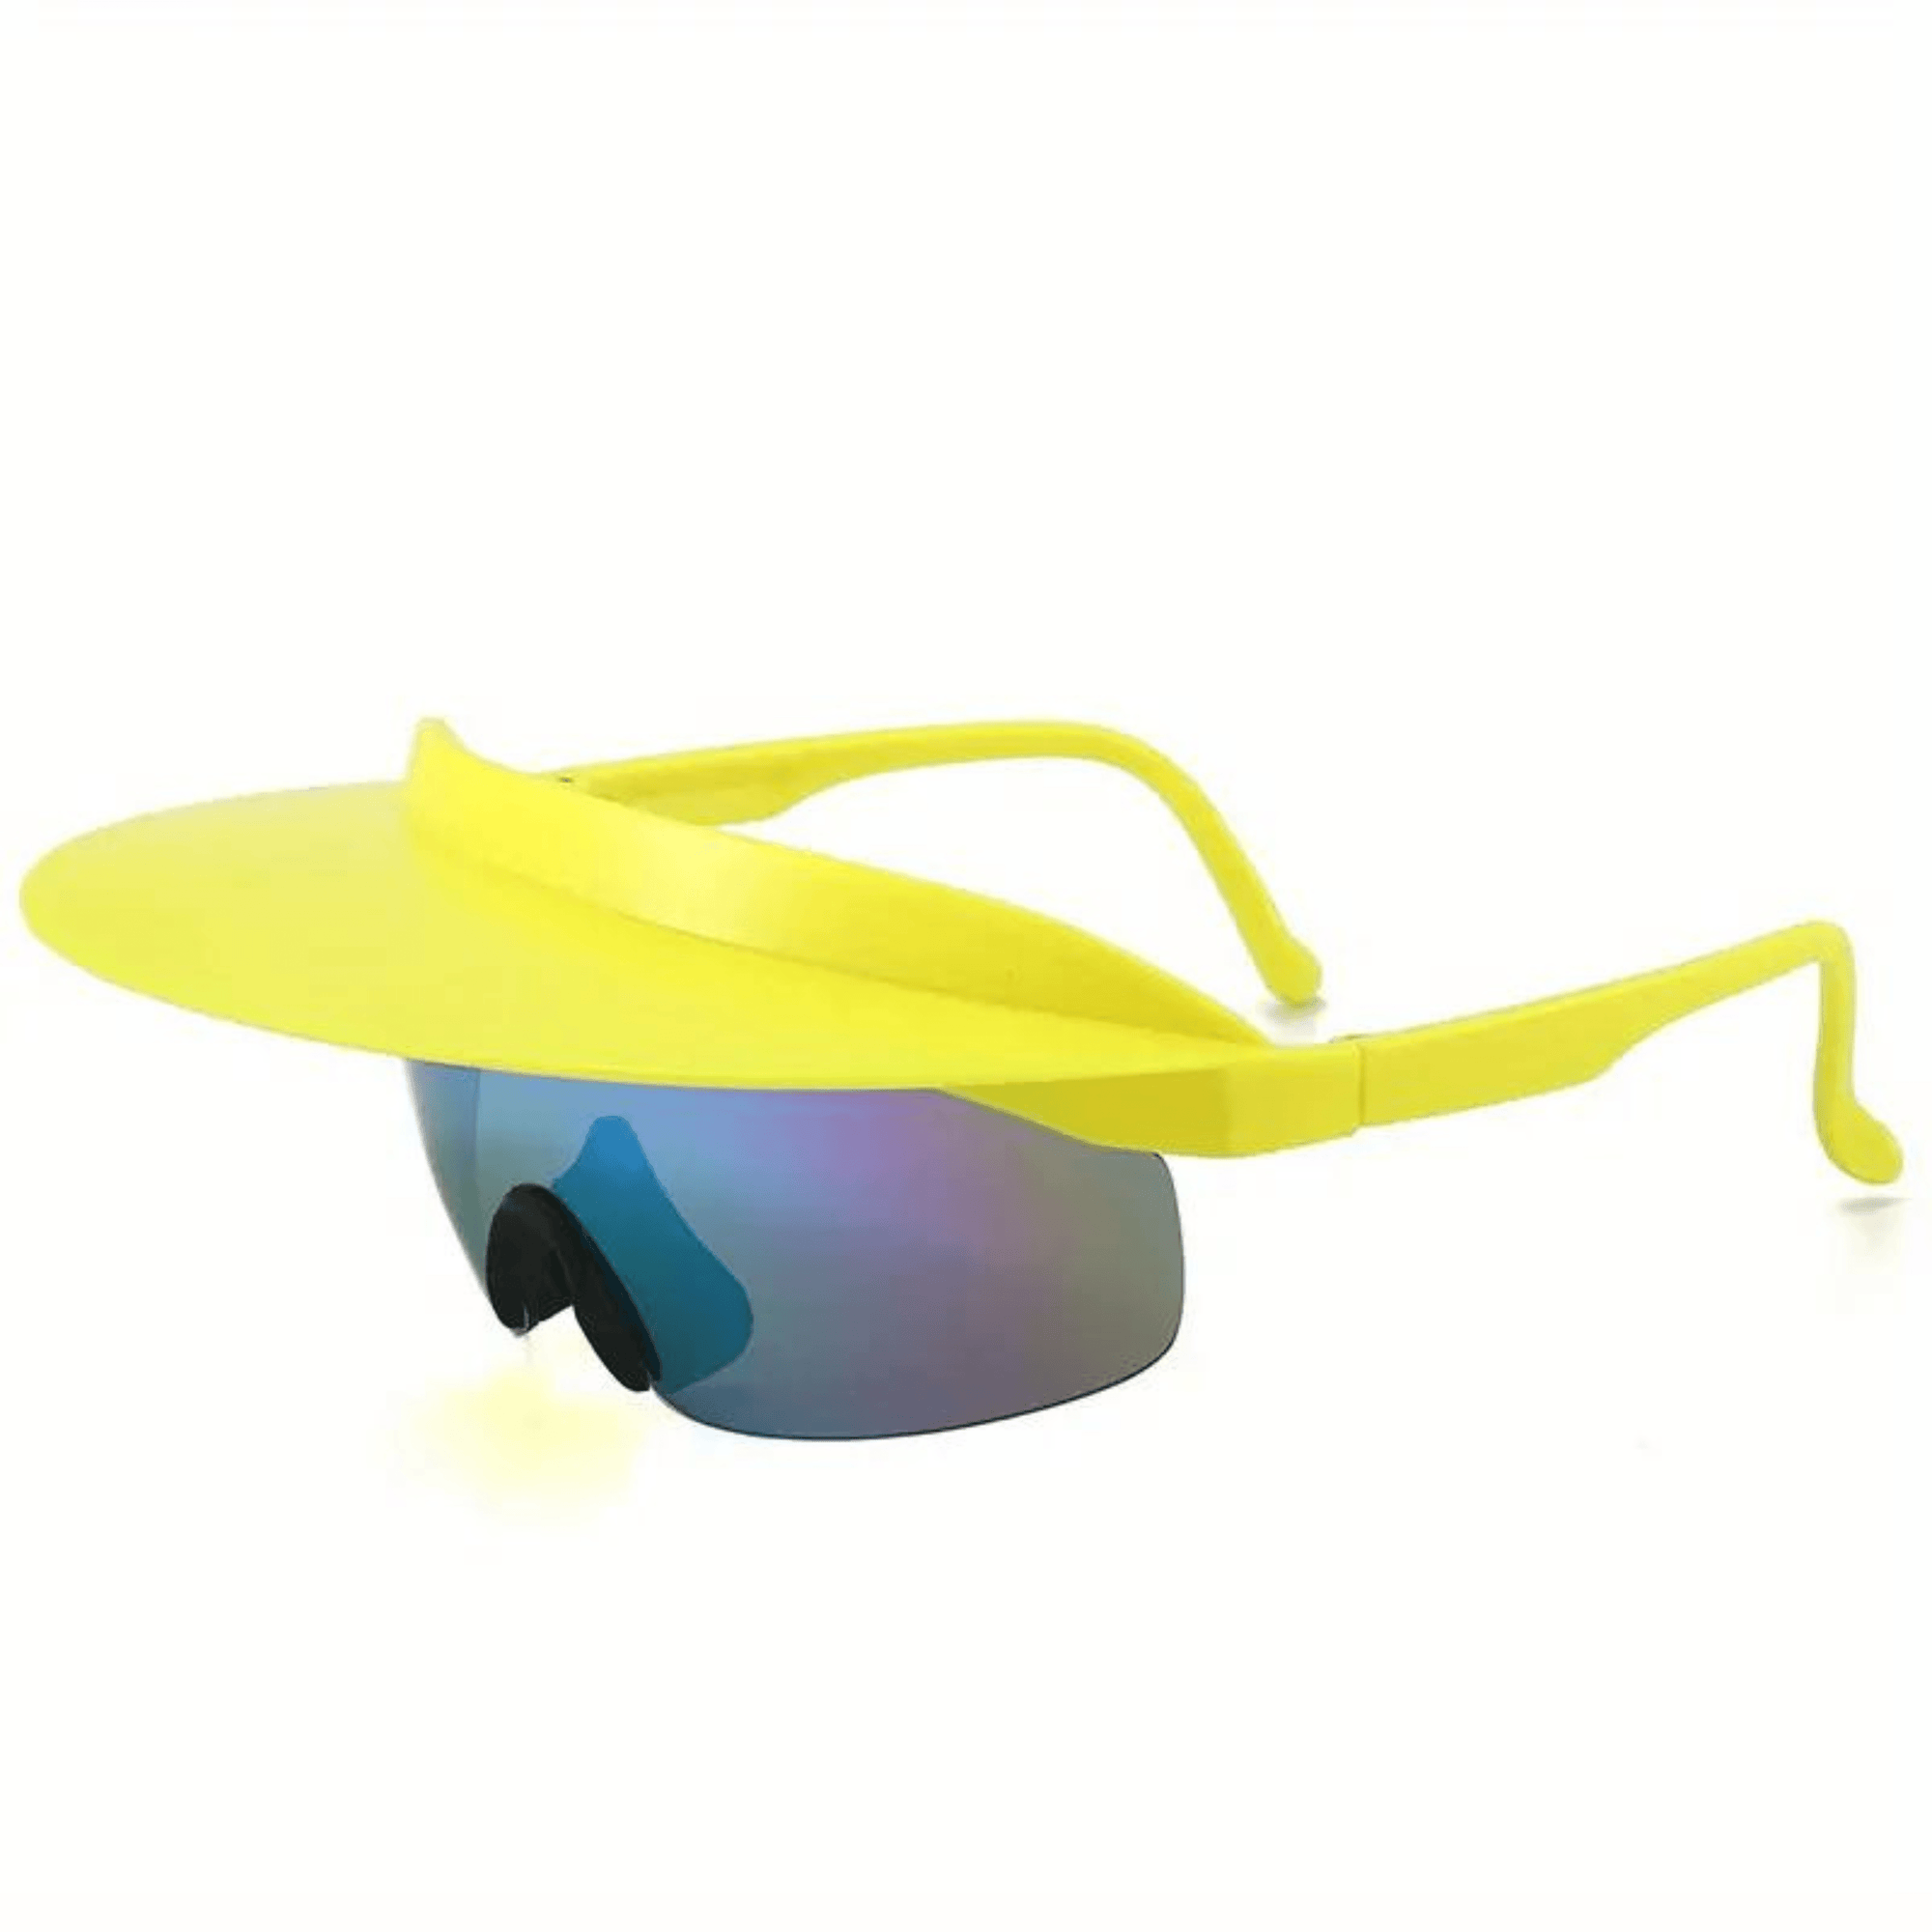 Schnelle Sonnenbrille mit Schirm - FestivalStuff